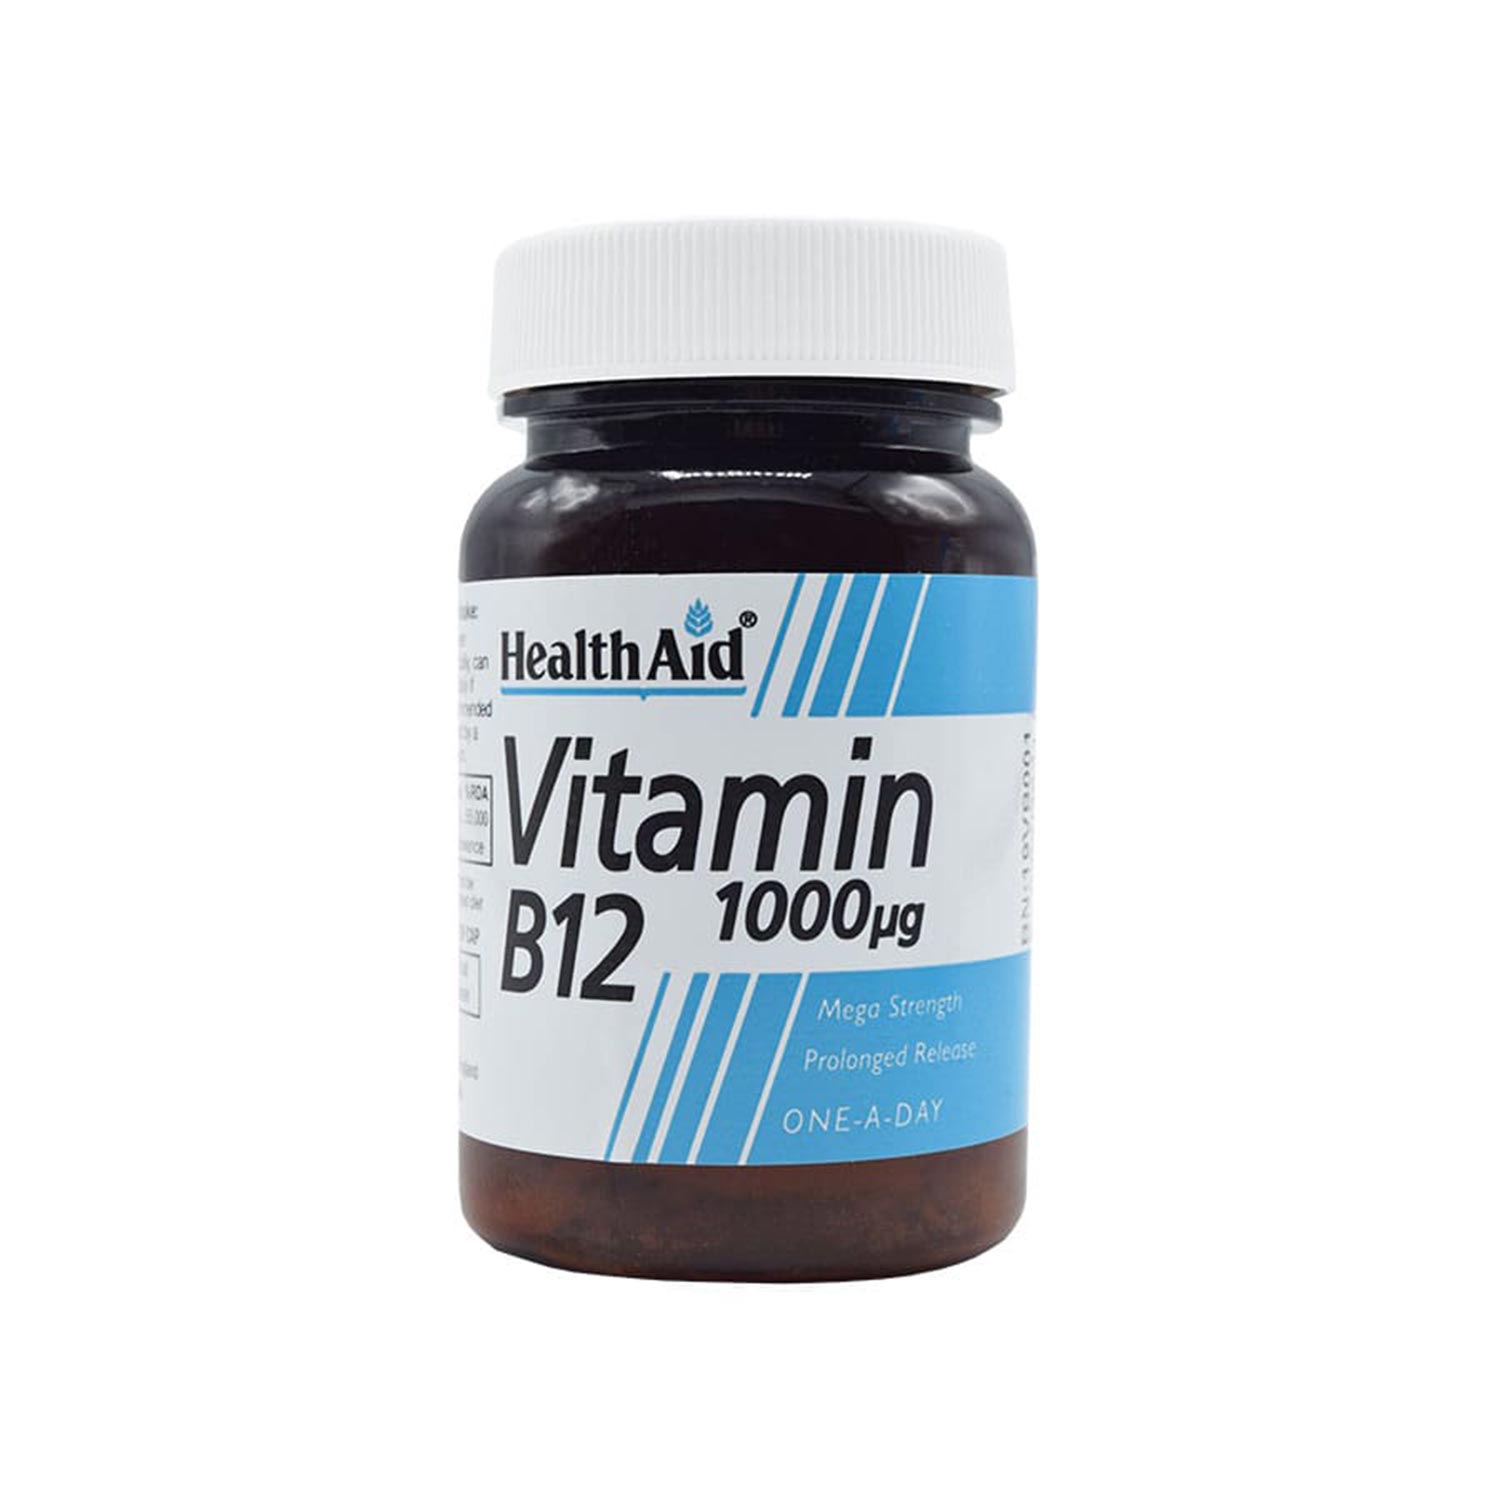 قرص ویتامین B12 هلث اید (Health Aid)